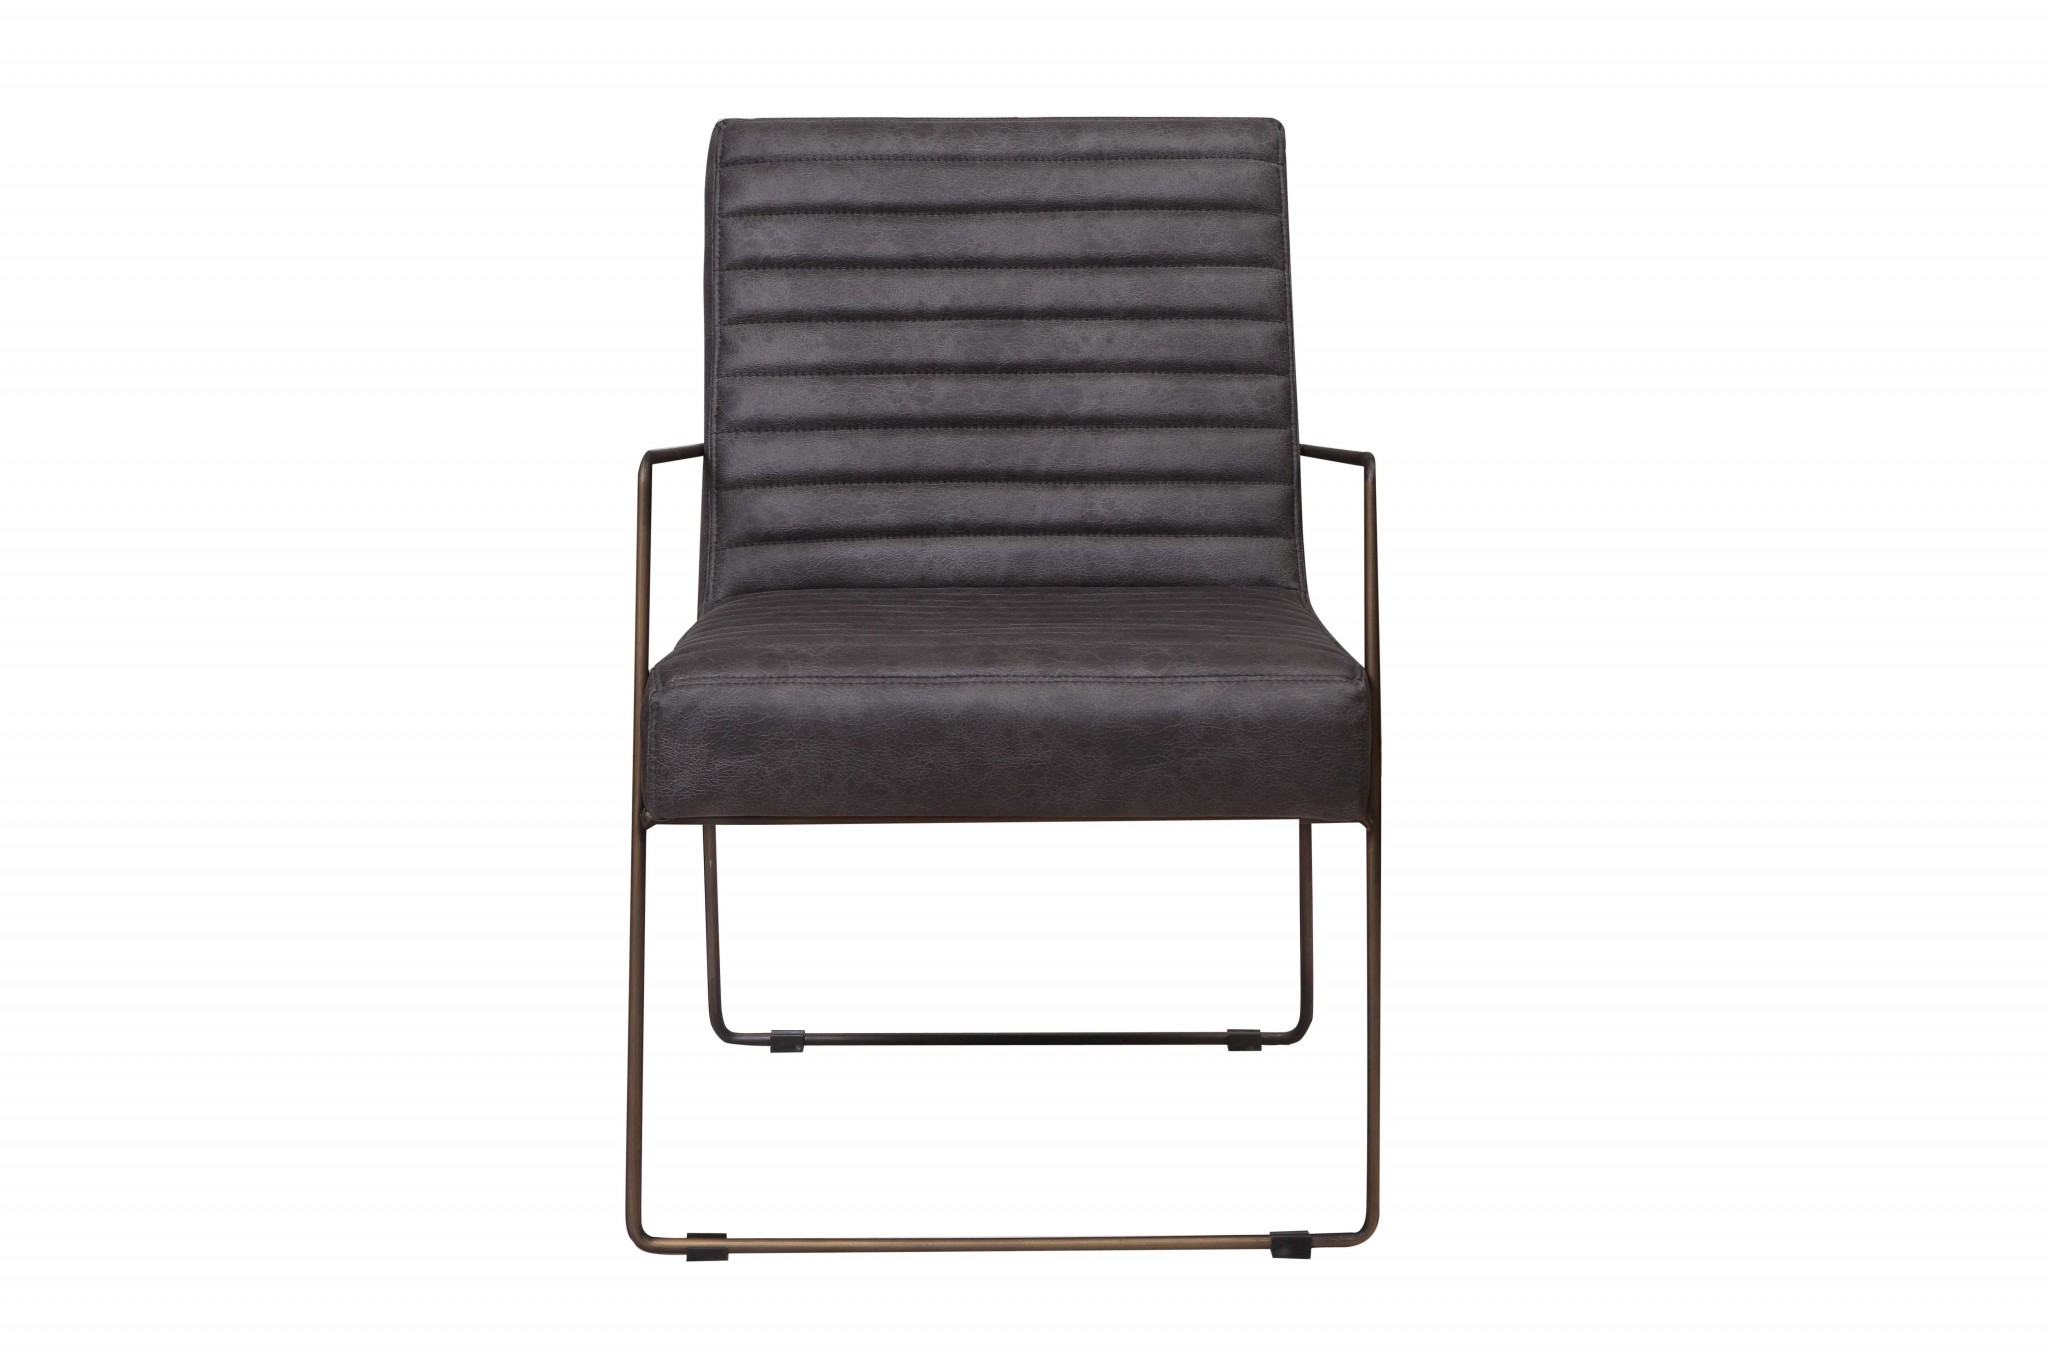 30" X 22" X 32" Grey Foam Metal Fabric Plywood Arm Chair